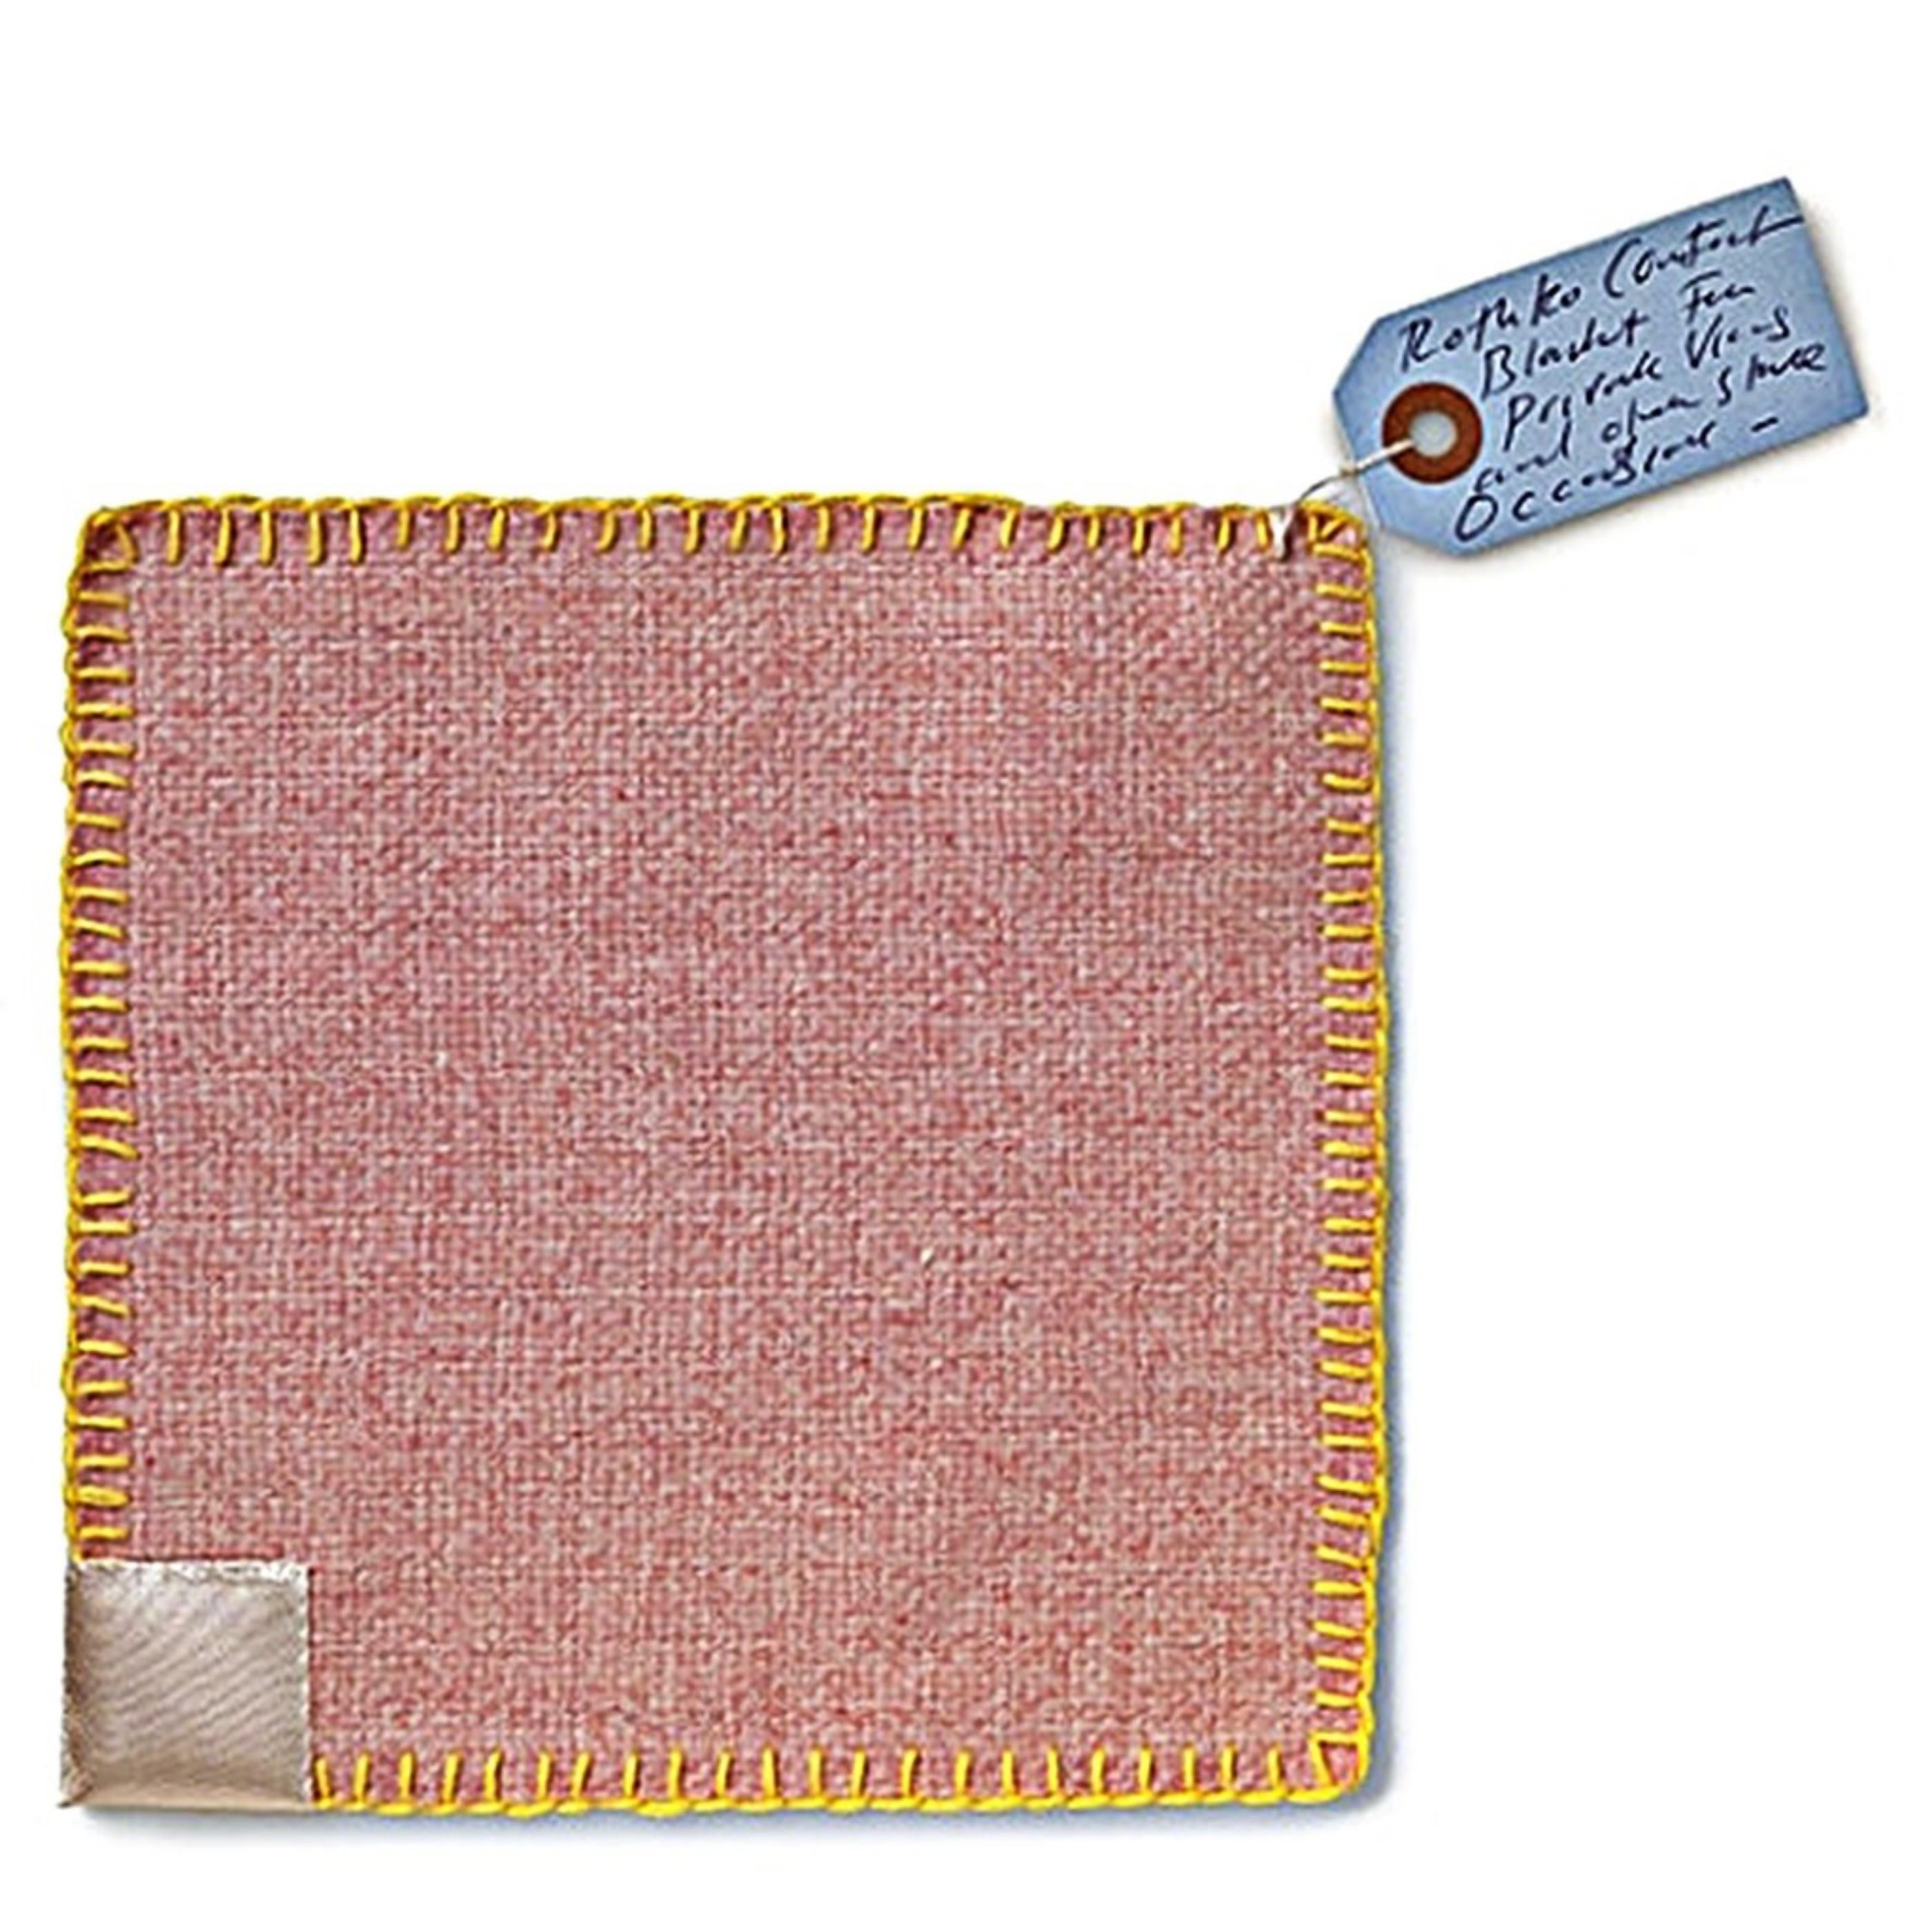 Rothko Comfort Blanket (textile en édition limitée avec étiquette signée à la main)